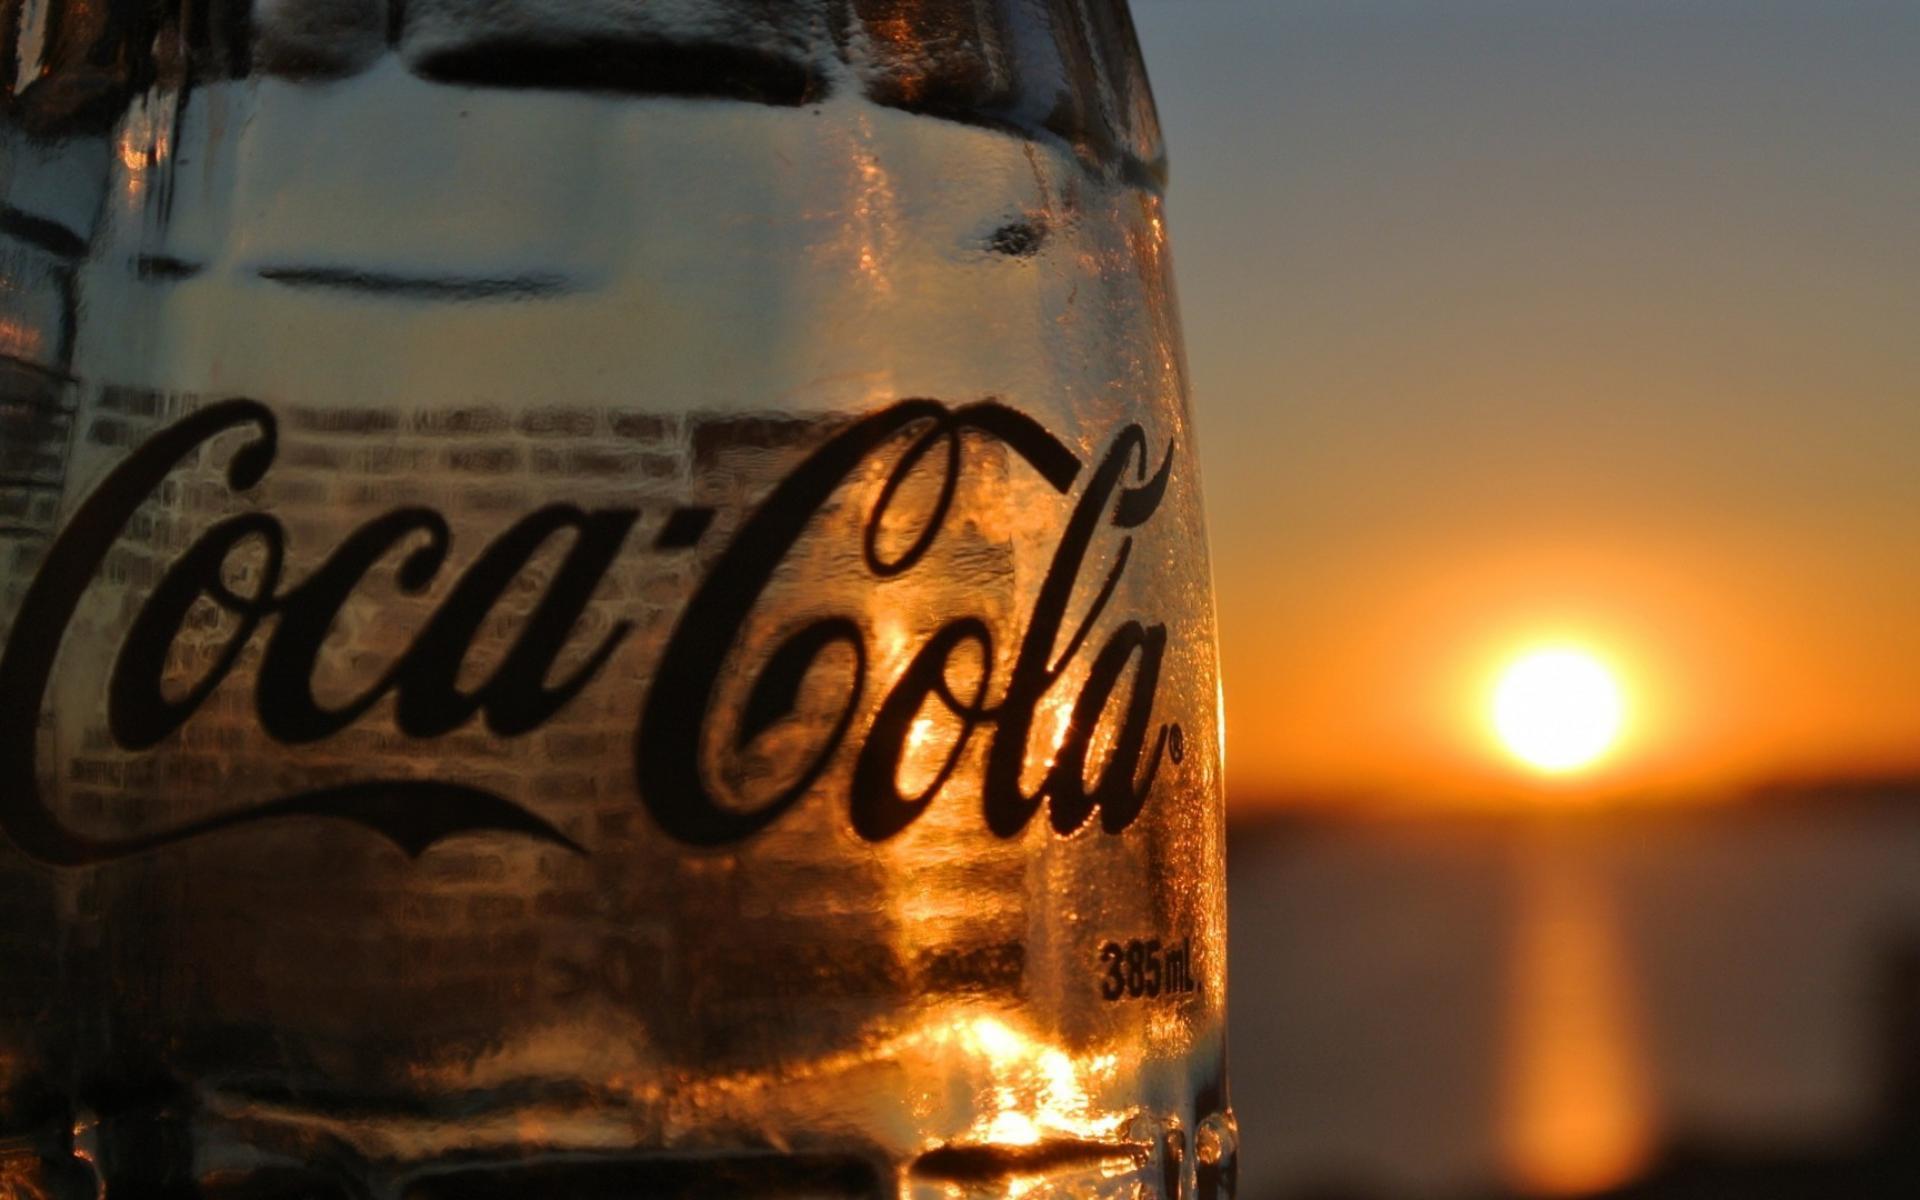 Coca Cola Bottles Coke Glass Sunset Wallpaper